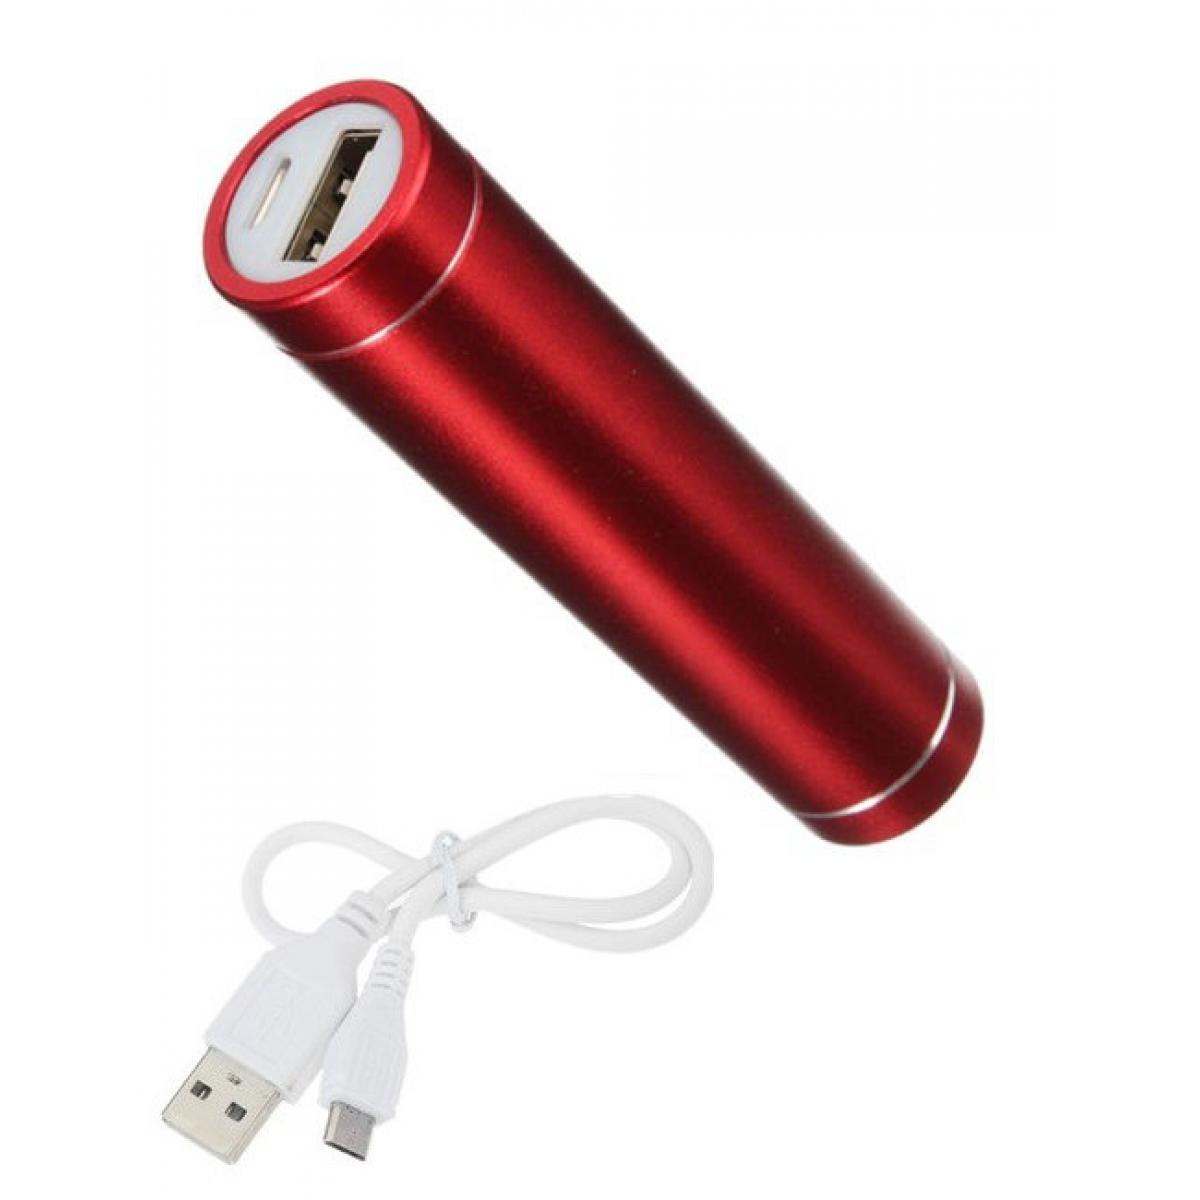 Shot - Batterie Chargeur Externe pour HUAWEI nova 5T Power Bank 2600mAh avec Cable USB/Mirco USB Secours Telephone (ROUGE) - Chargeur secteur téléphone